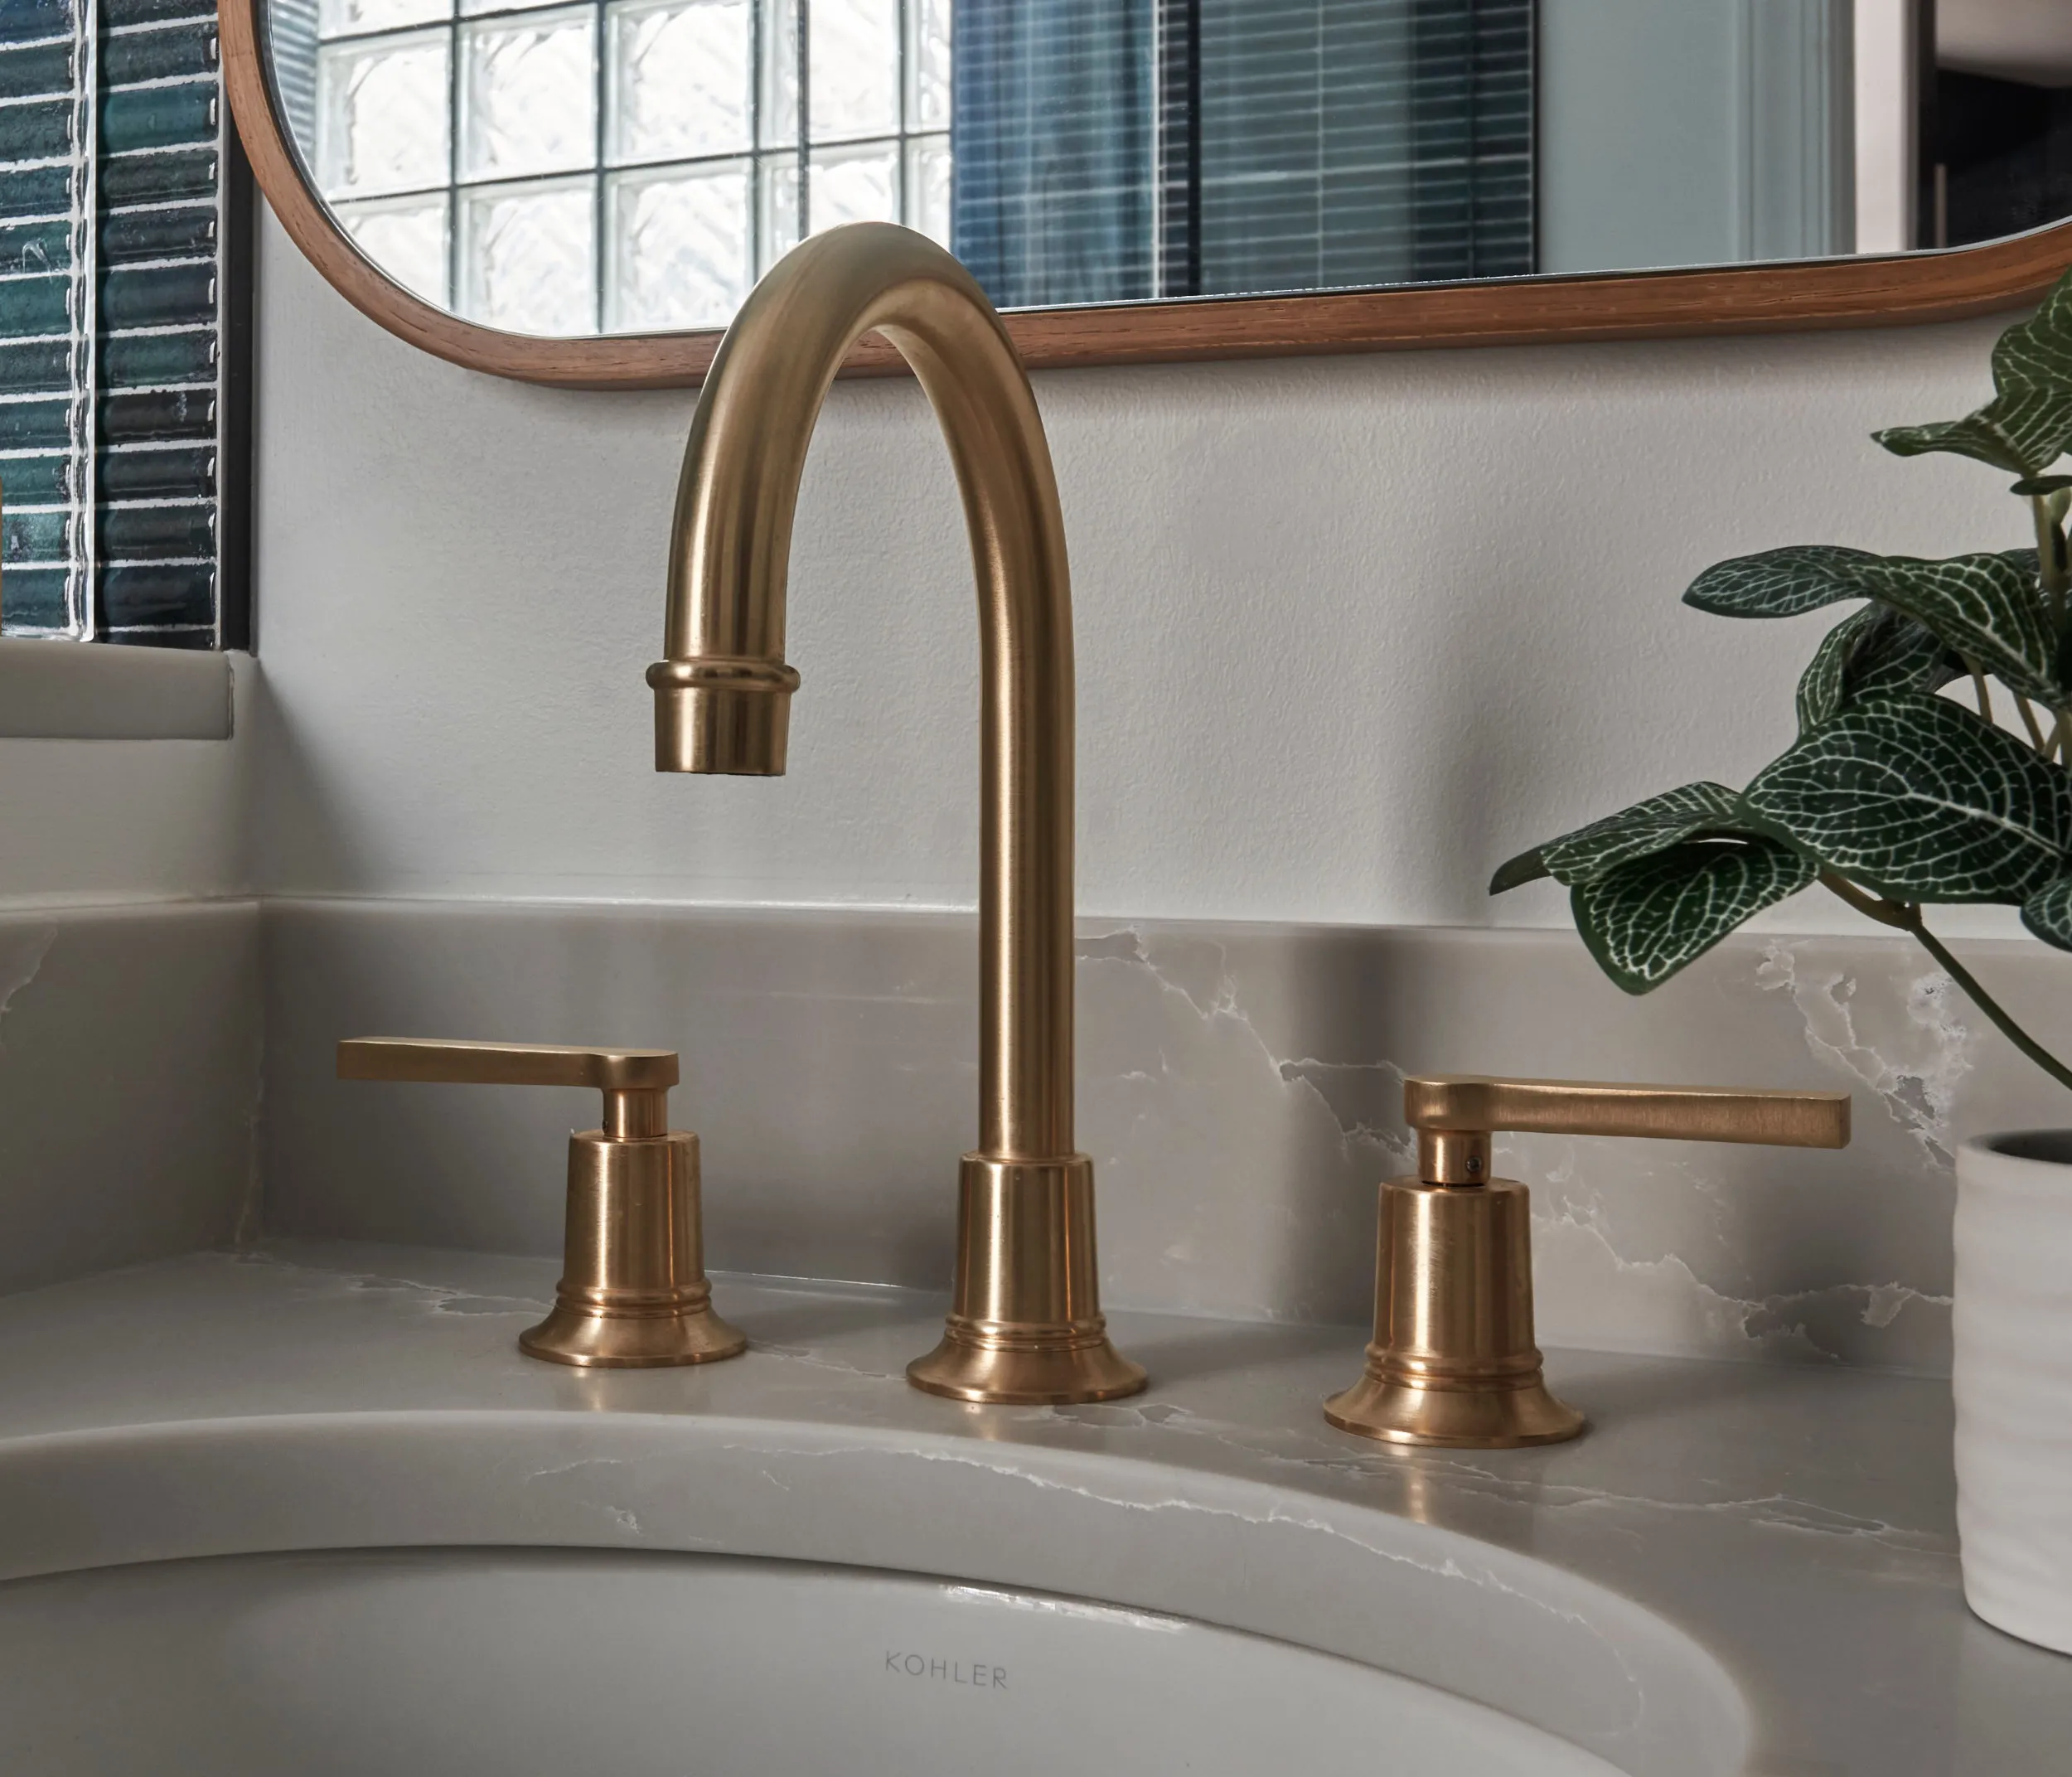 Premium bronze faucet